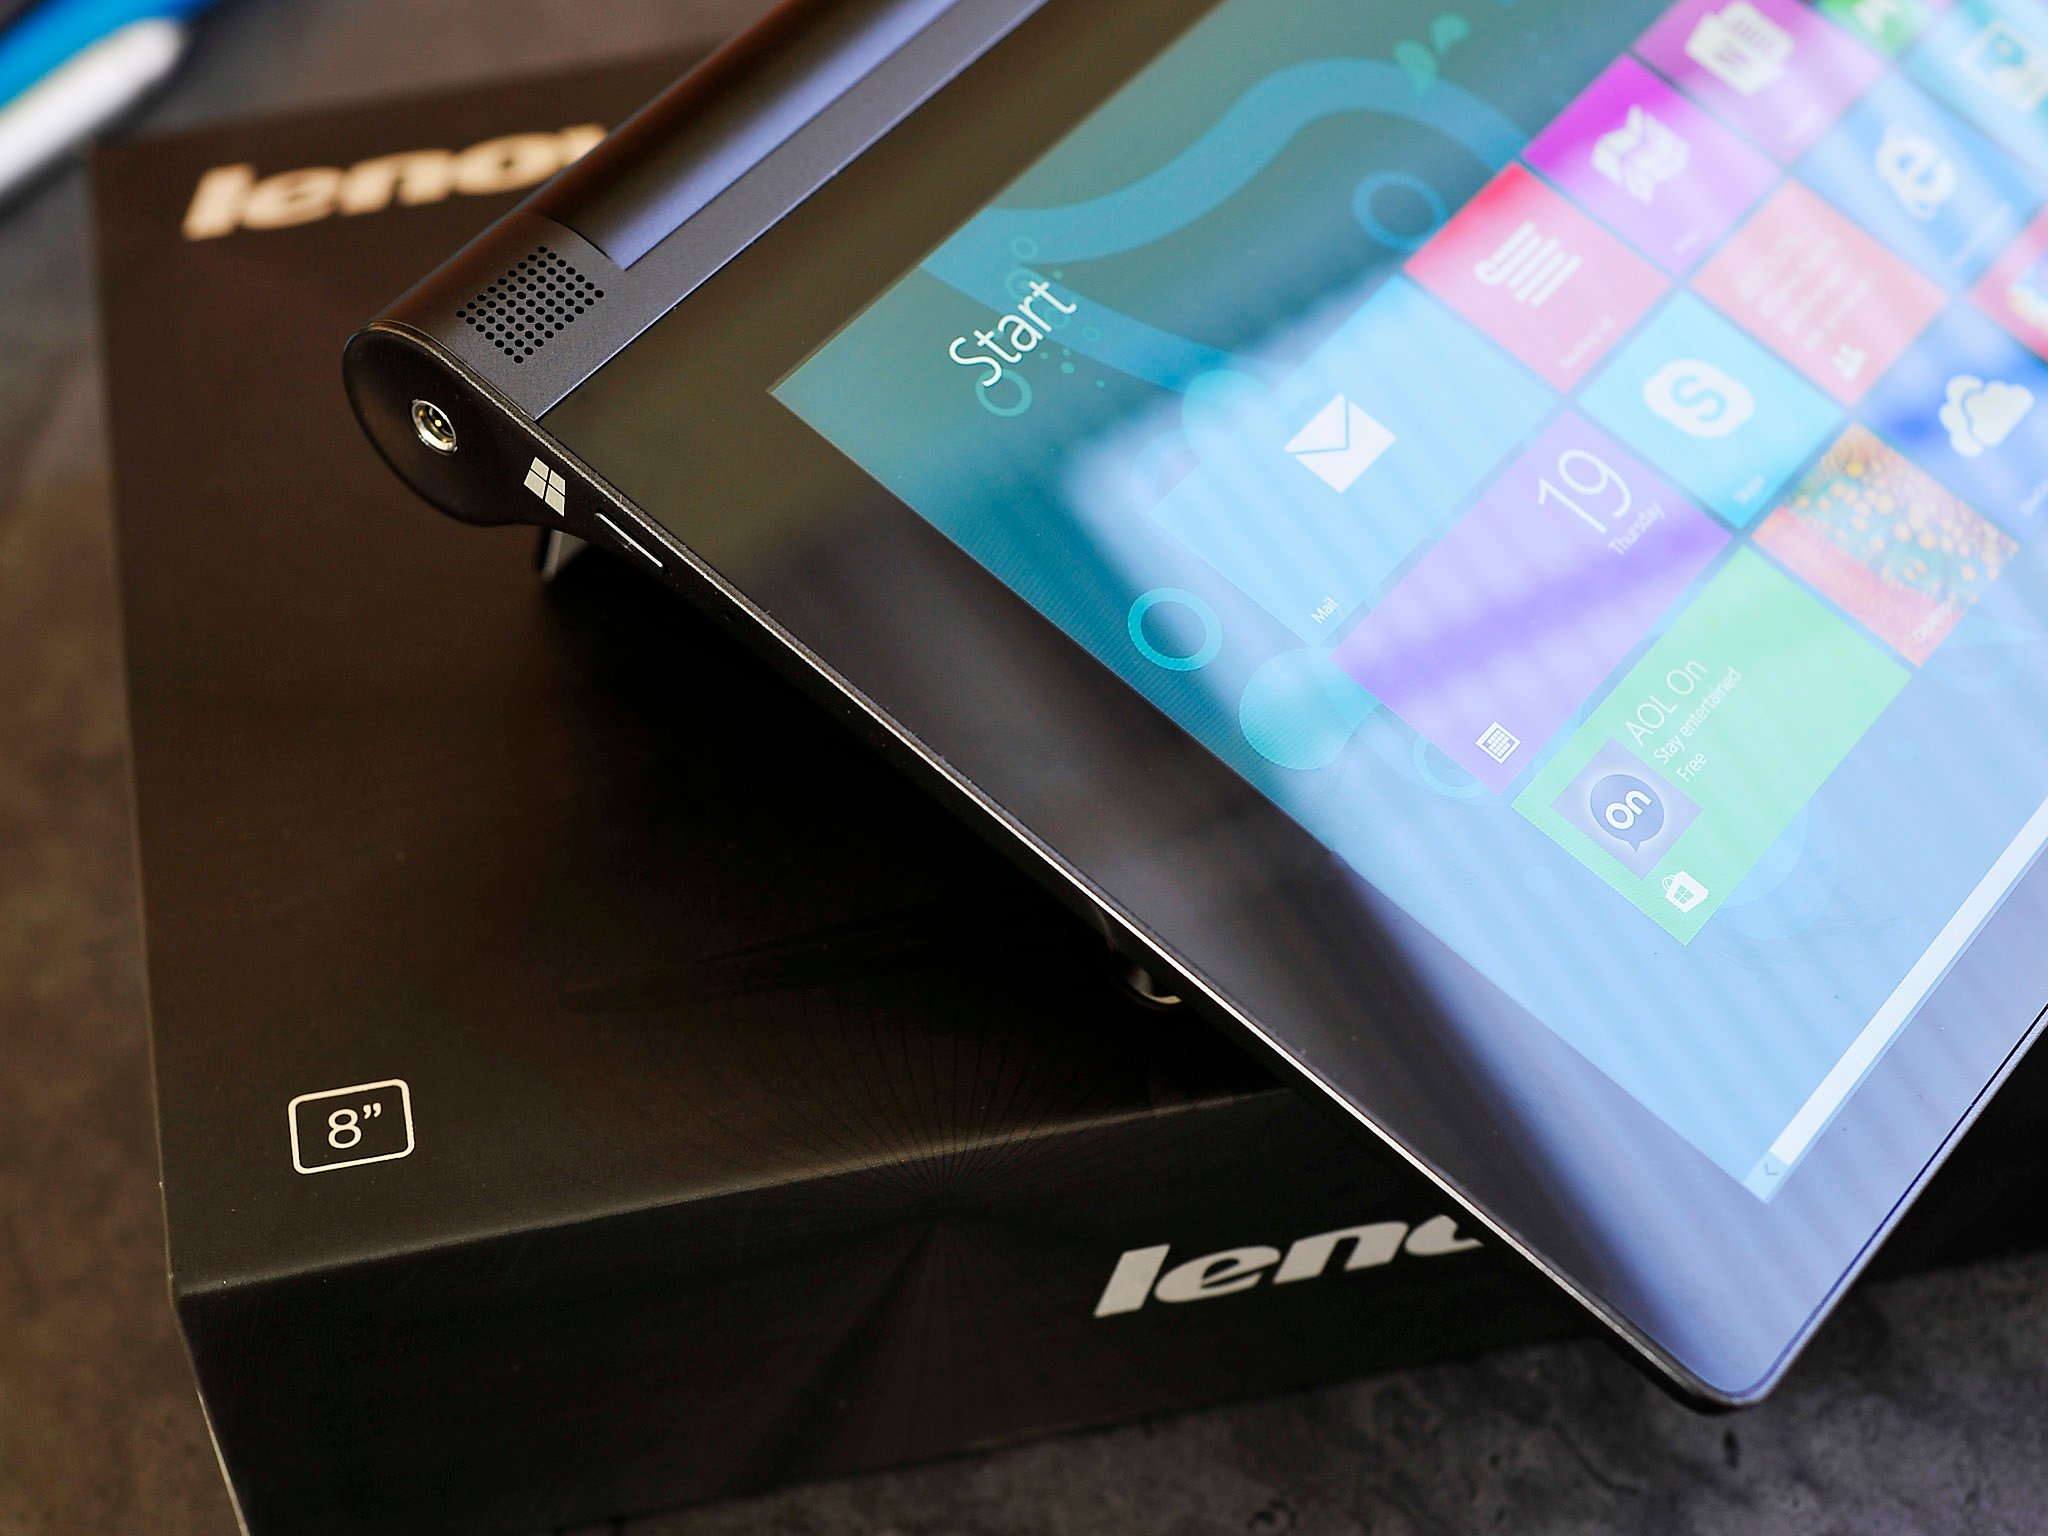 Lenovo-Yoga-2-tablet-hinge.jpg